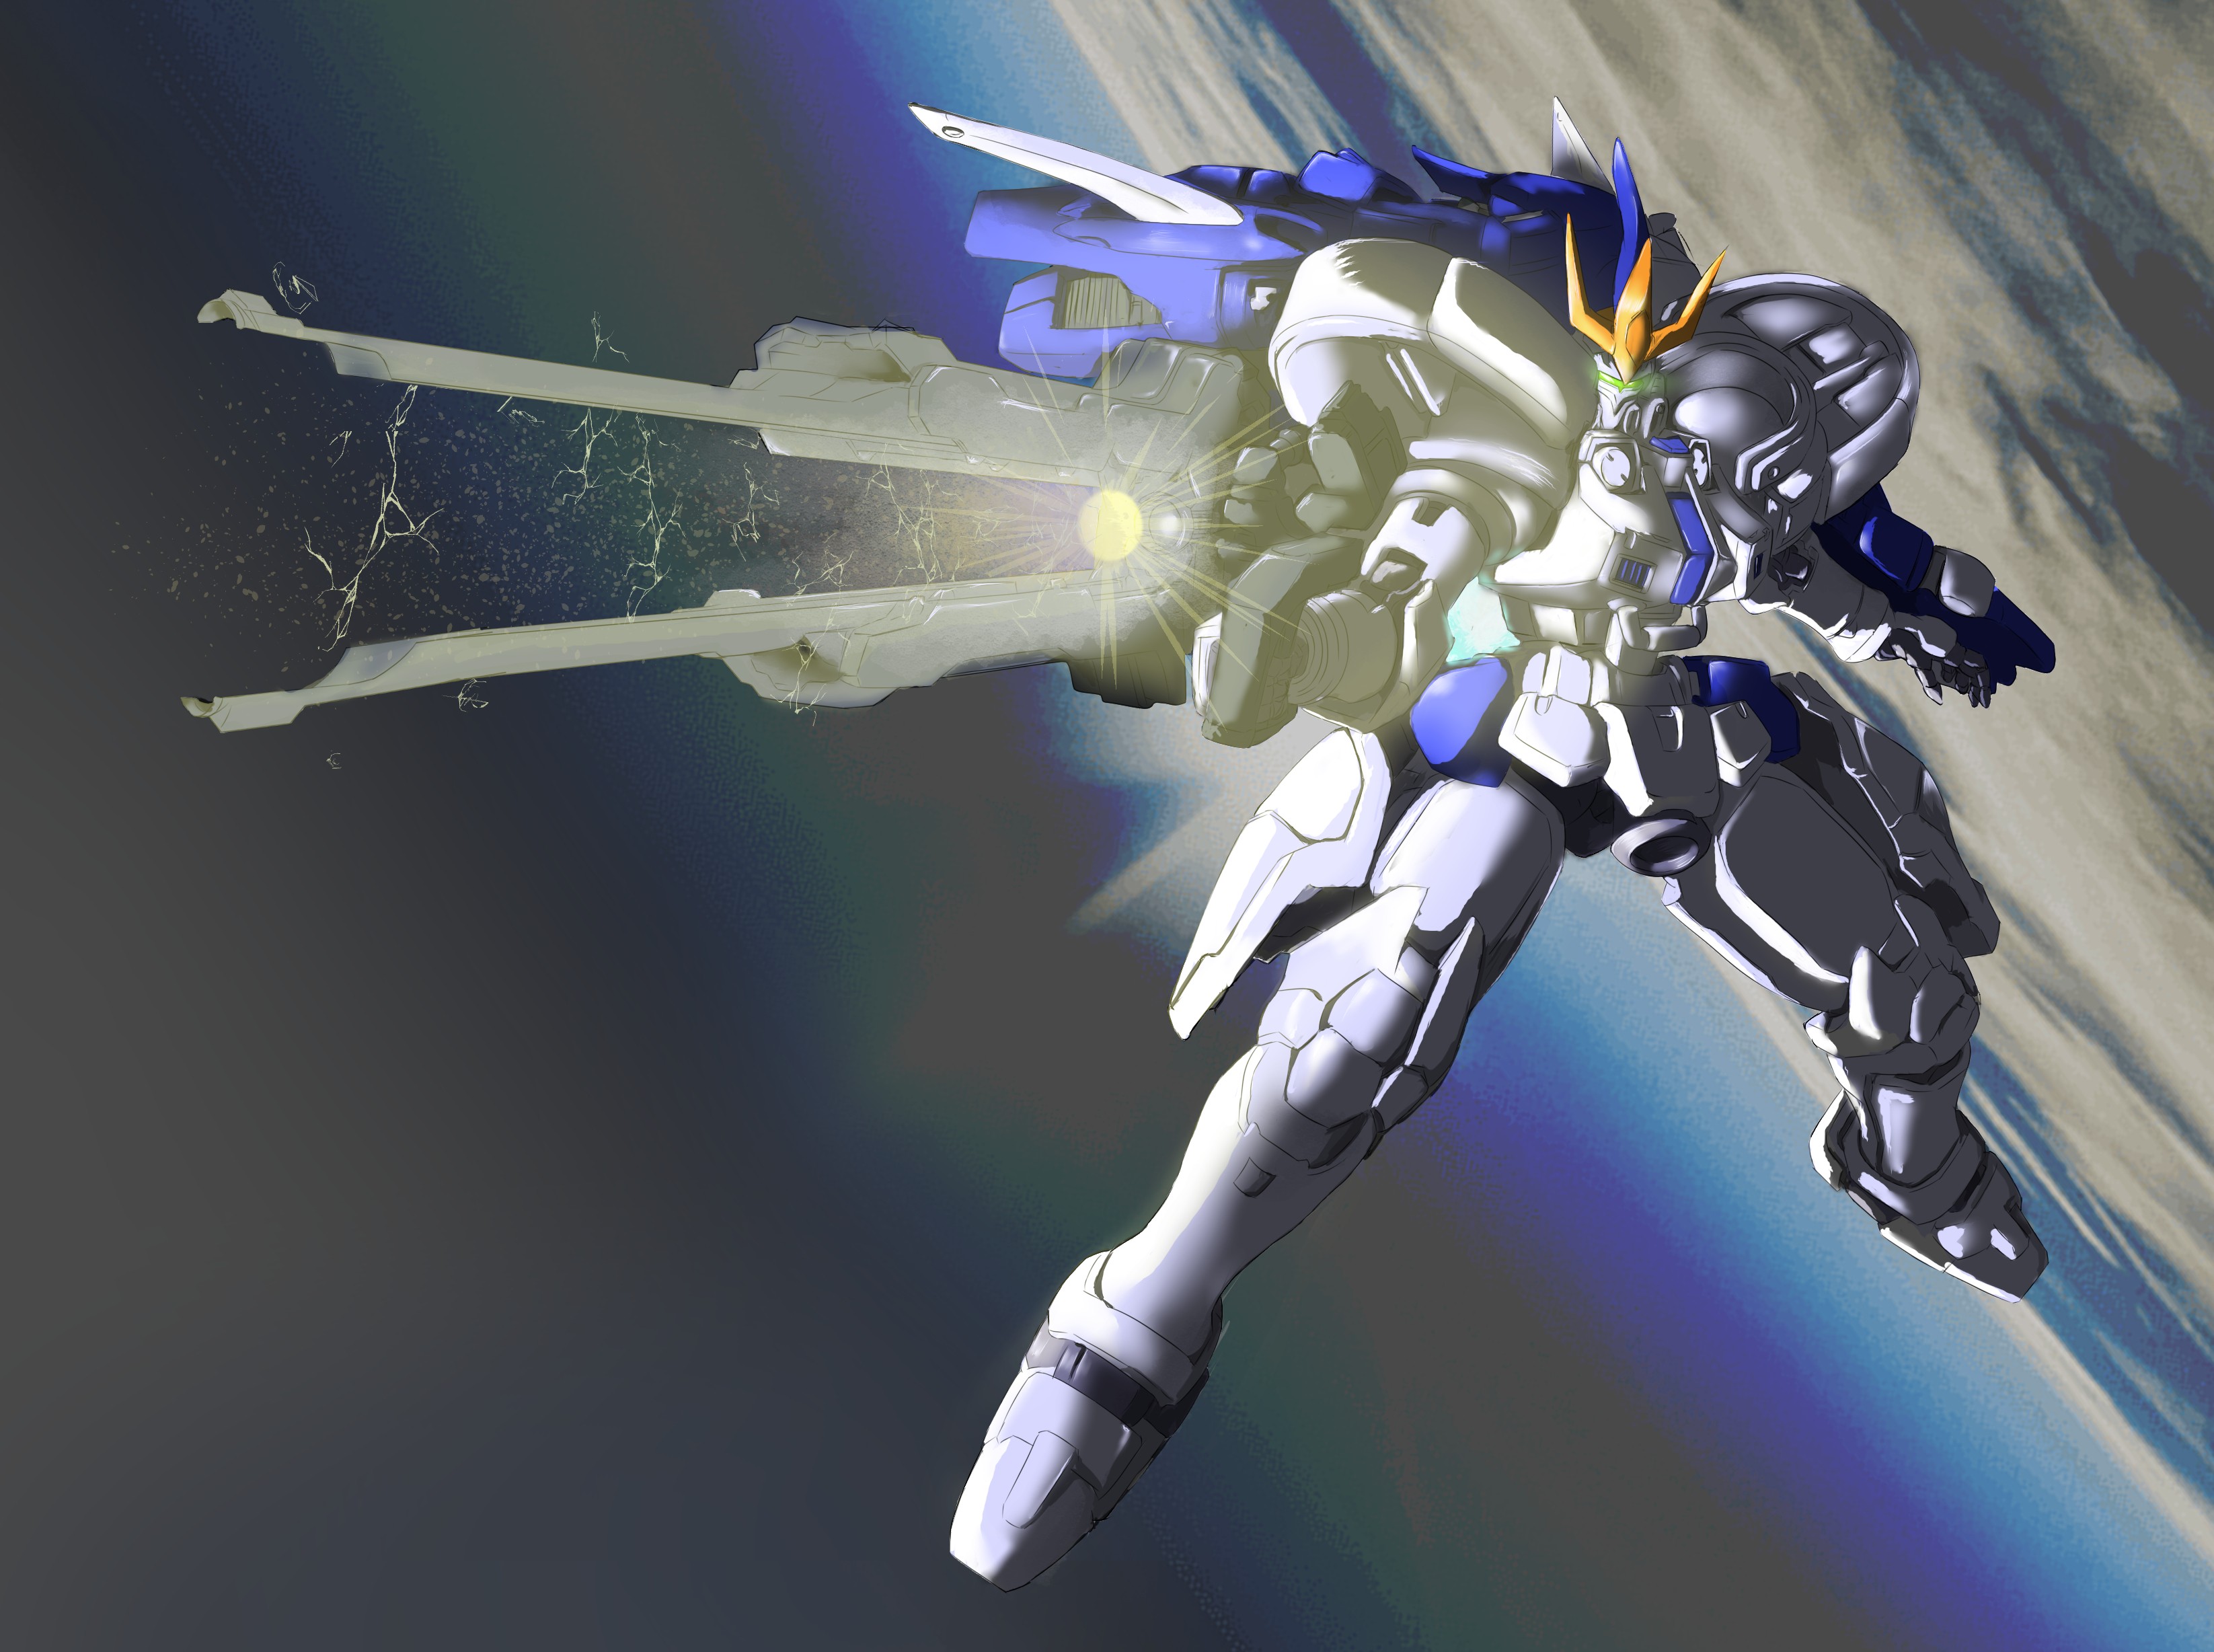 Tallgeese Iii Anime Mechs Super Robot Taisen Mobile Suit Gundam Wing Artwork Digital Art Fan Art Mob 3292x2456